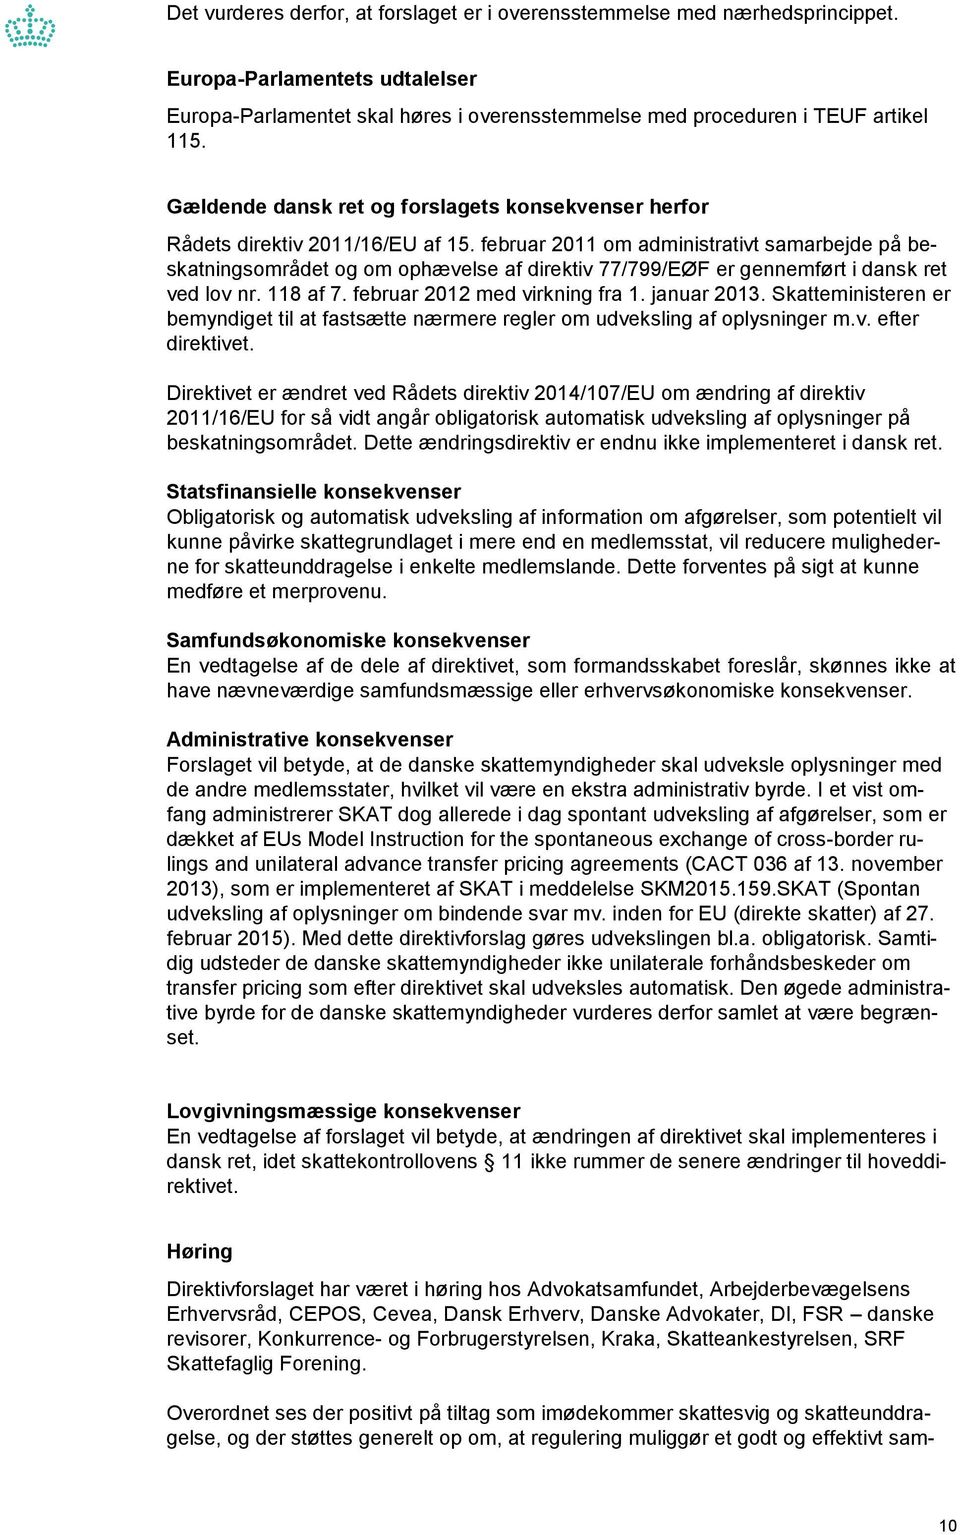 februar 2011 om administrativt samarbejde på beskatningsområdet og om ophævelse af direktiv 77/799/EØF er gennemført i dansk ret ved lov nr. 118 af 7. februar 2012 med virkning fra 1. januar 2013.